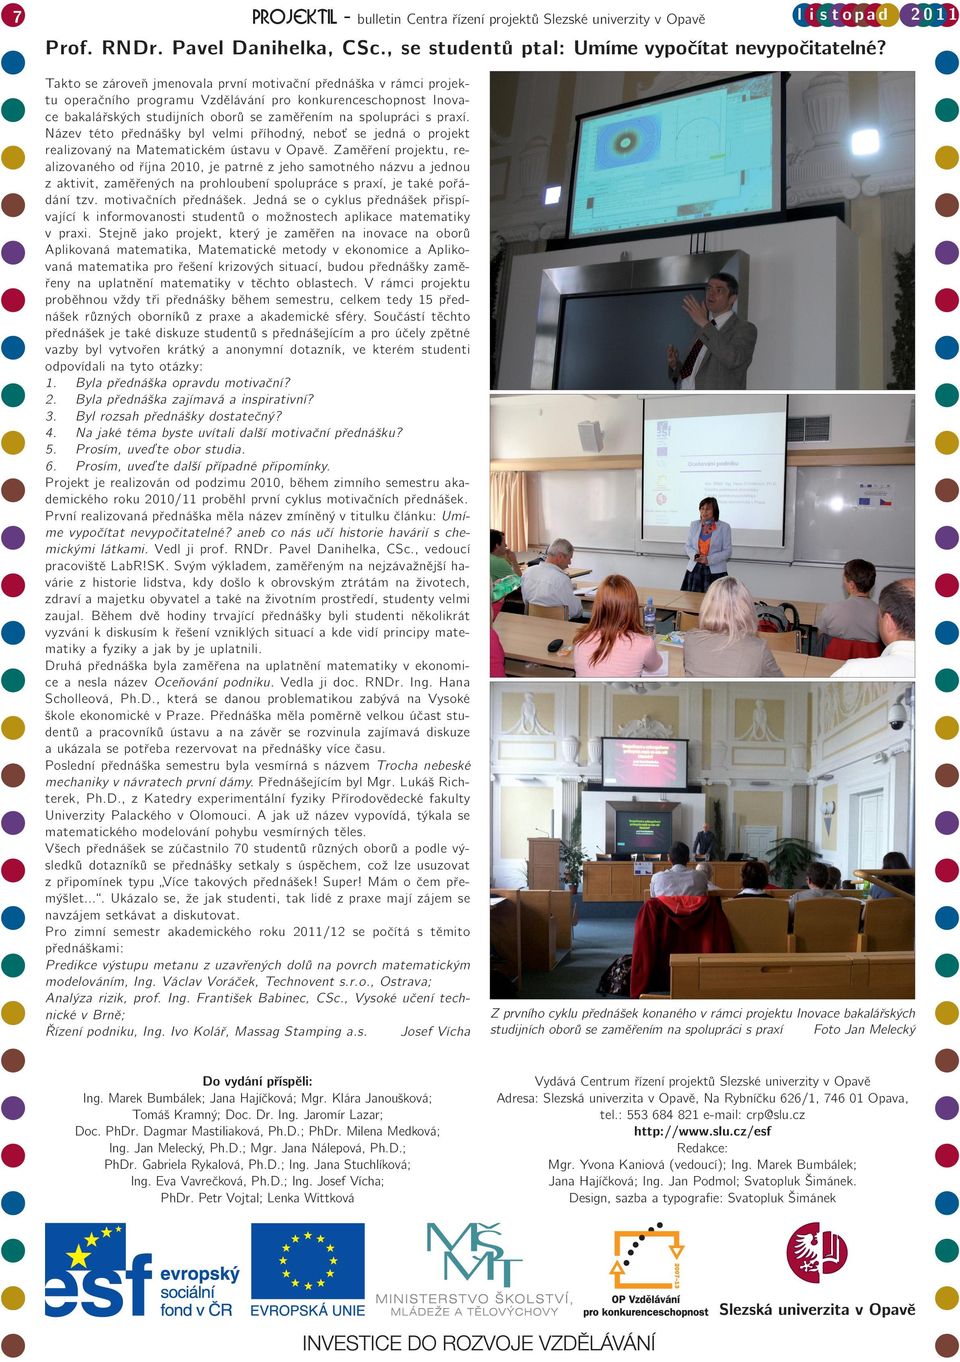 Název této přednášky byl velmi příhodný, neboť se jedná o projekt realizovaný na Matematickém ústavu v Opavě.